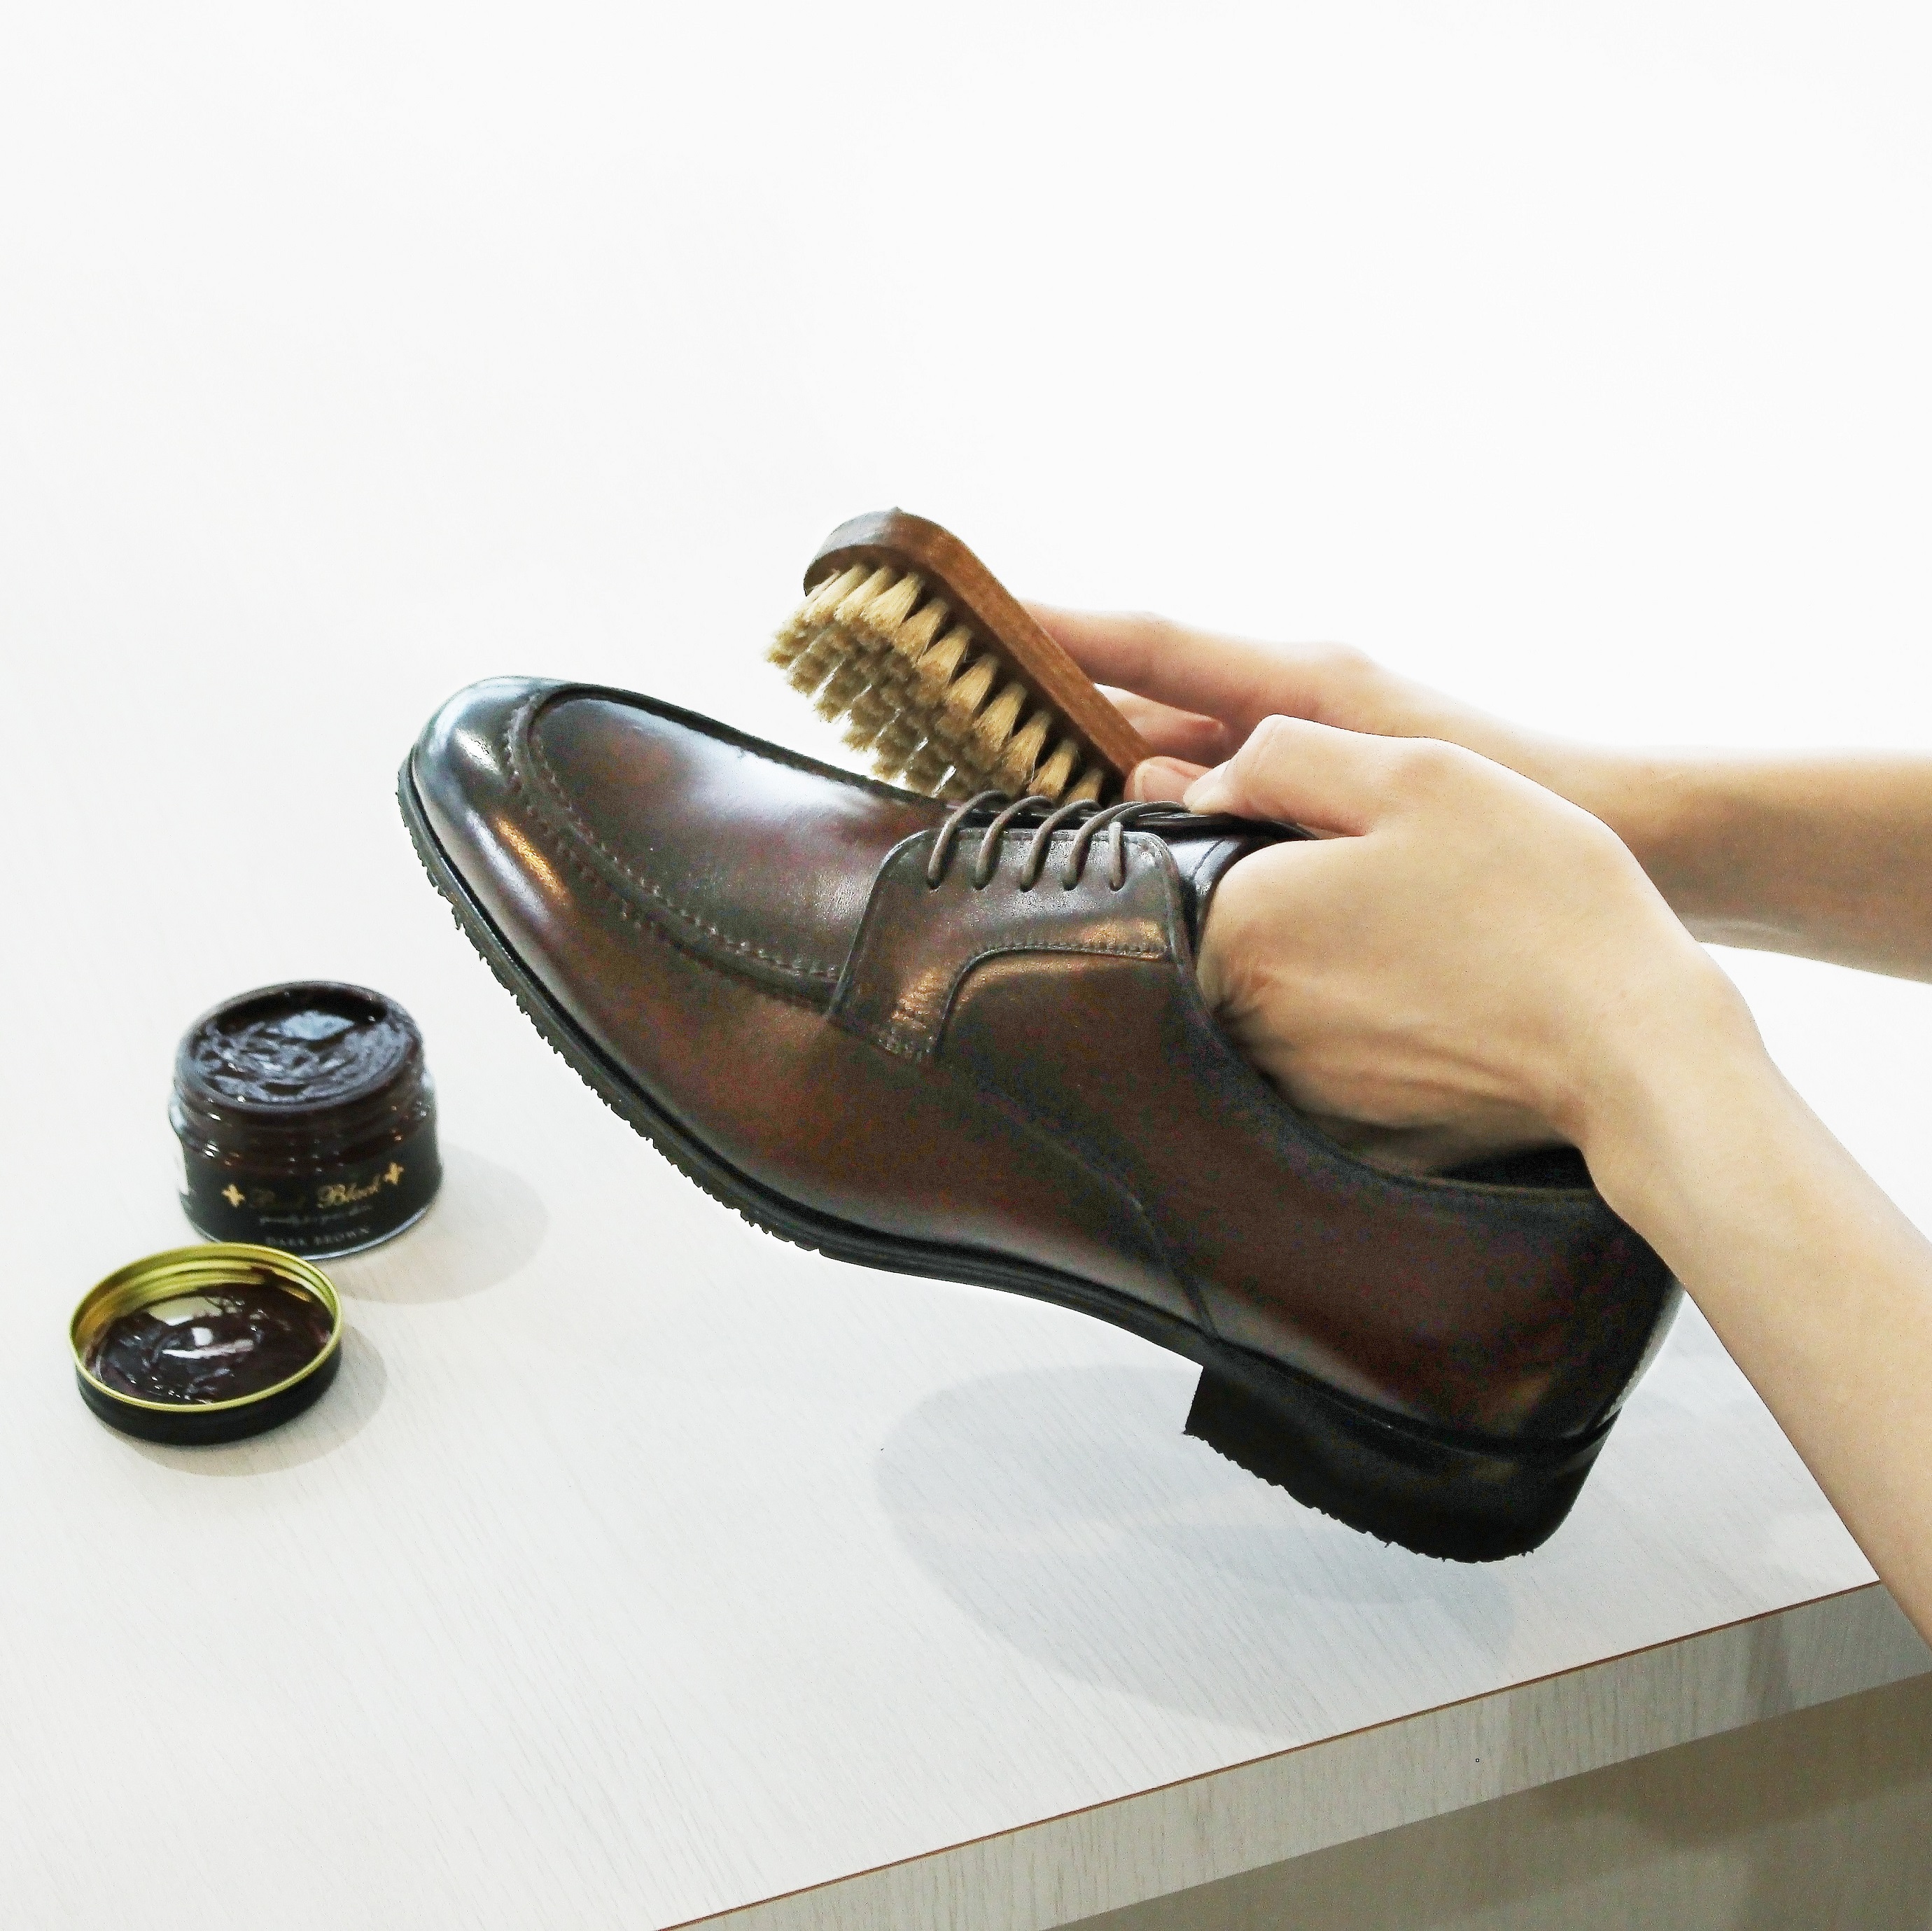 革靴のお手入れ方法を学ぼう〜基本から時短のお手入れまで〜 - LOCONDO MAGAZINE